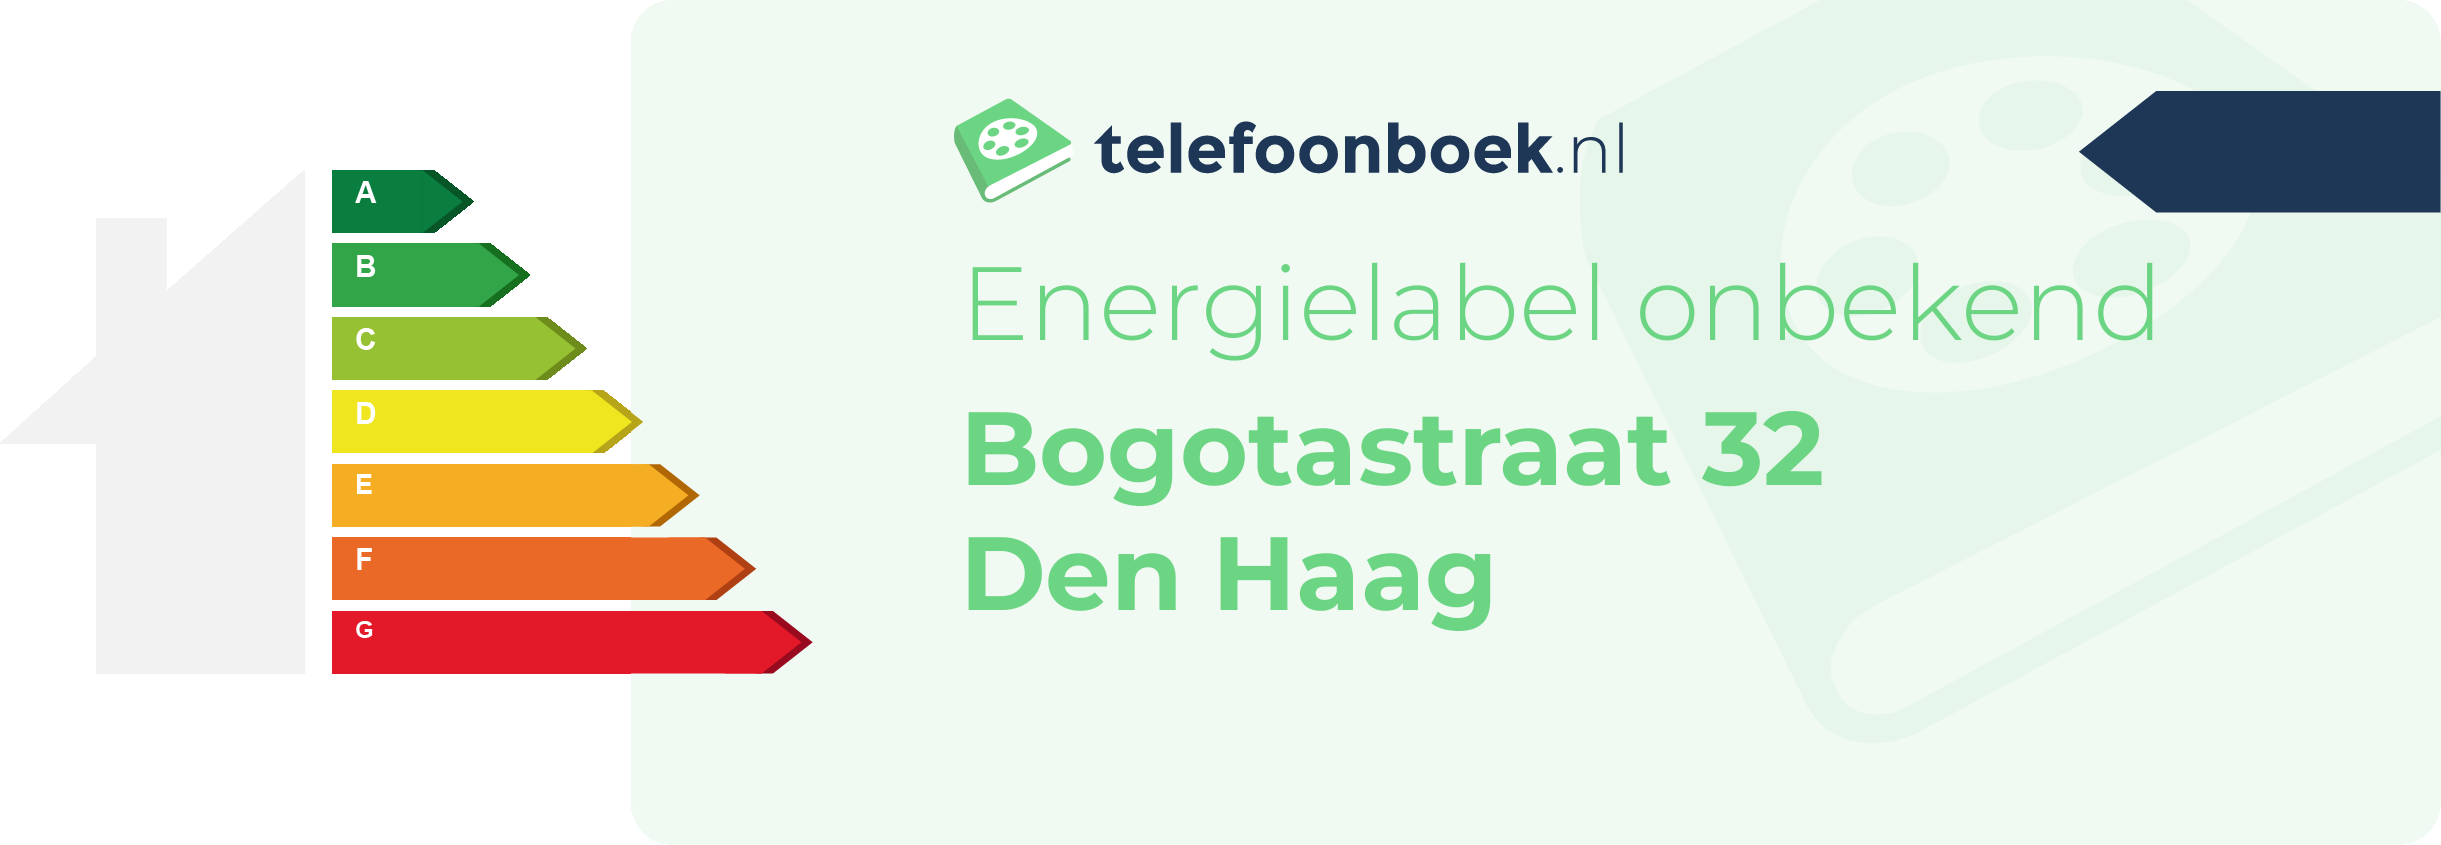 Energielabel Bogotastraat 32 Den Haag